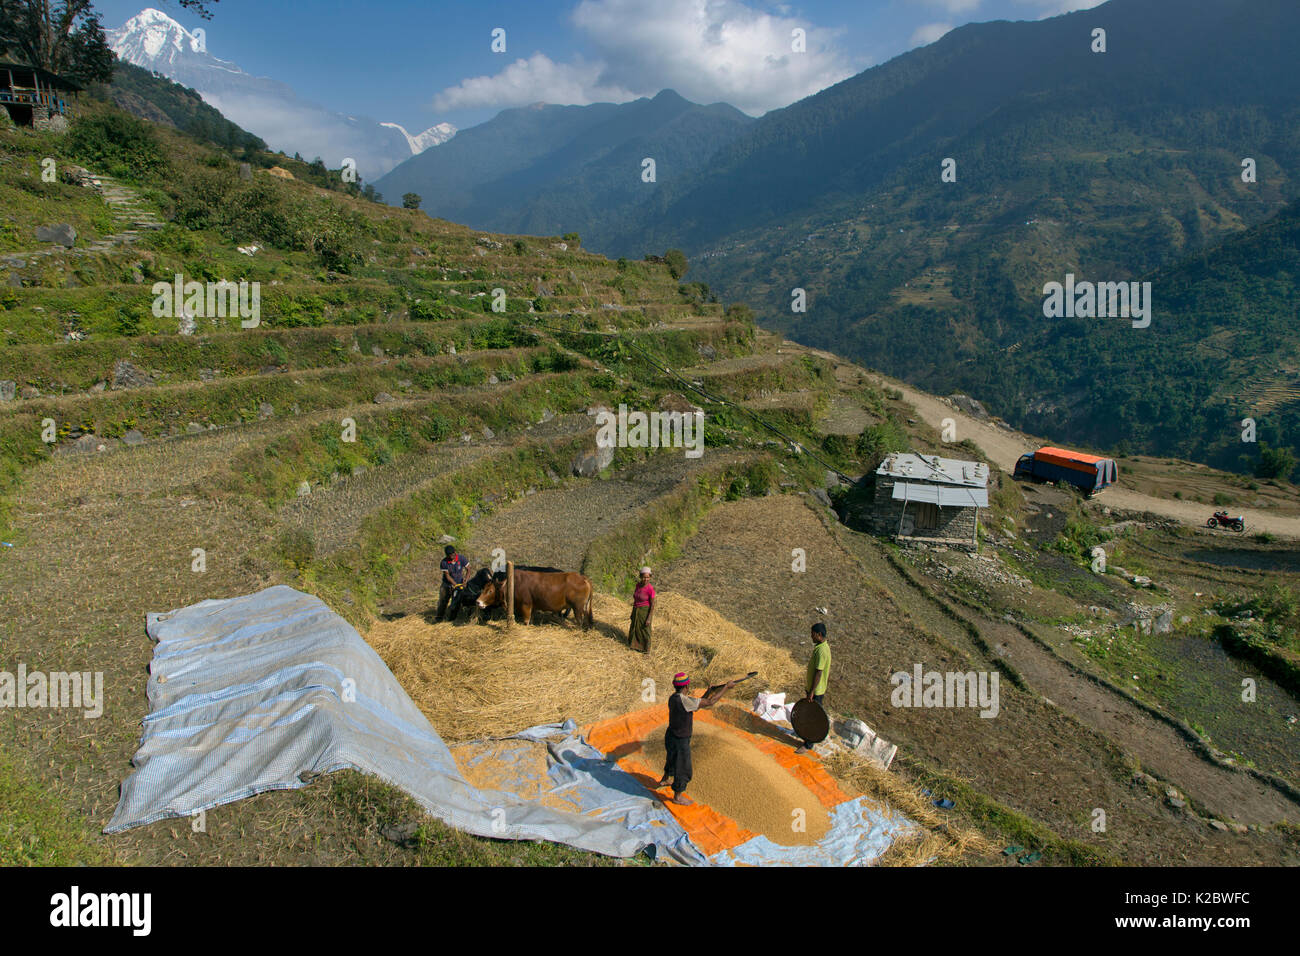 La récolte du blé aux agriculteurs le vannage sur les terrasses de la colline, près de village de montagne de Ghandruk, avec en toile de fond la montagne Annapurna, Modi Khola, vallée de l'Himalaya, au Népal. Novembre 2014. Banque D'Images